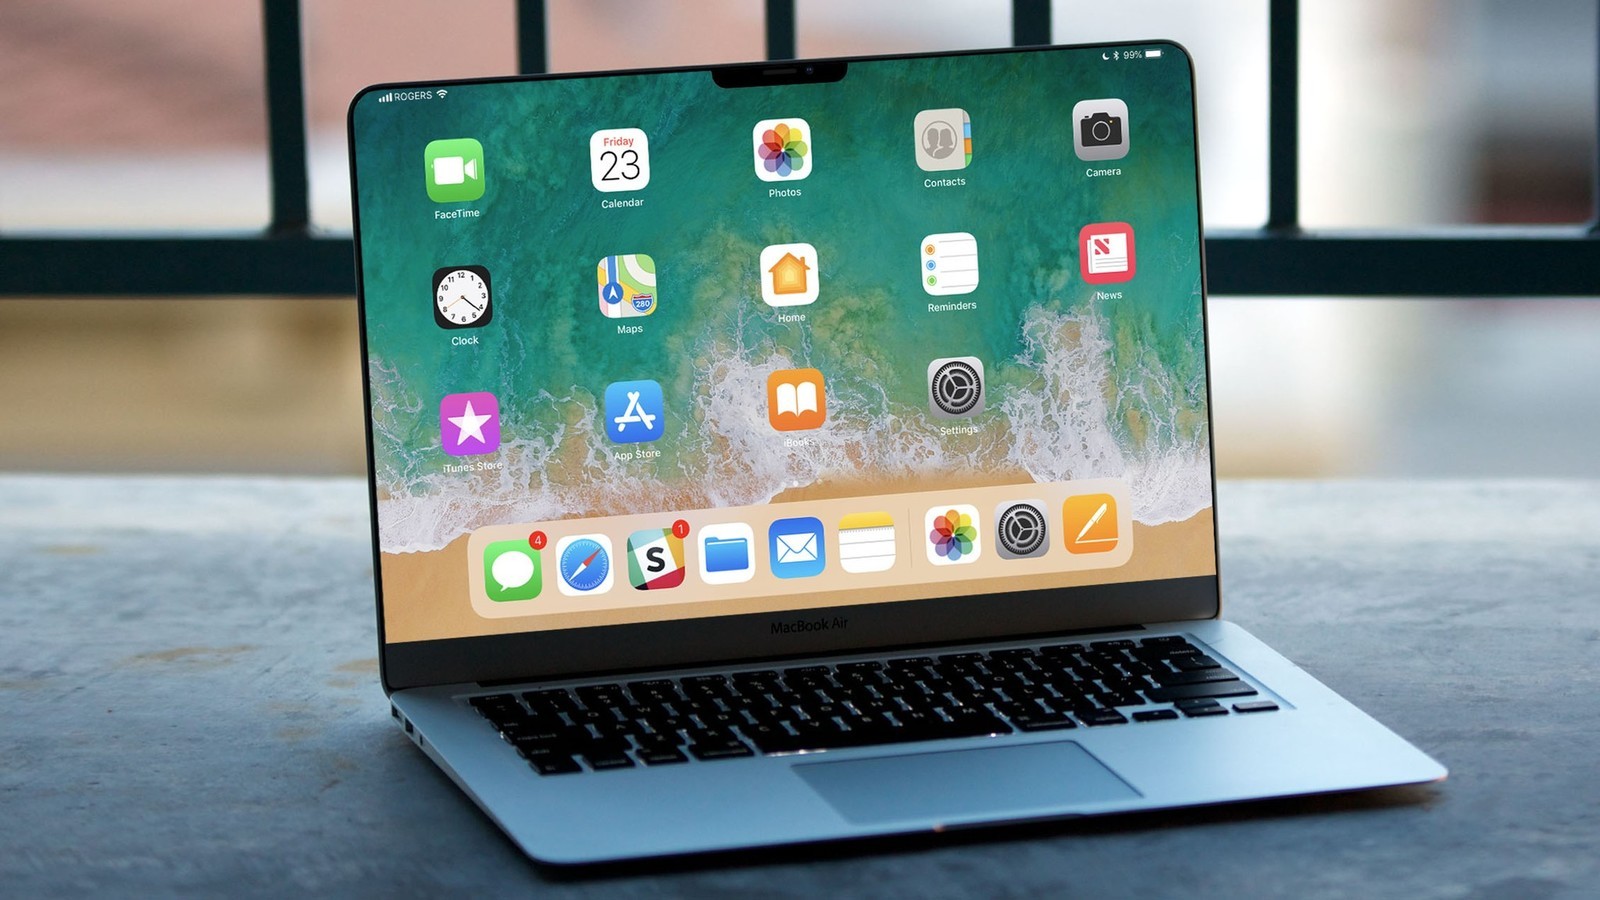 Bằng sáng chế mới nhất của Apple: Face ID trên Mac và Touch Bar trên Magic Keyboard